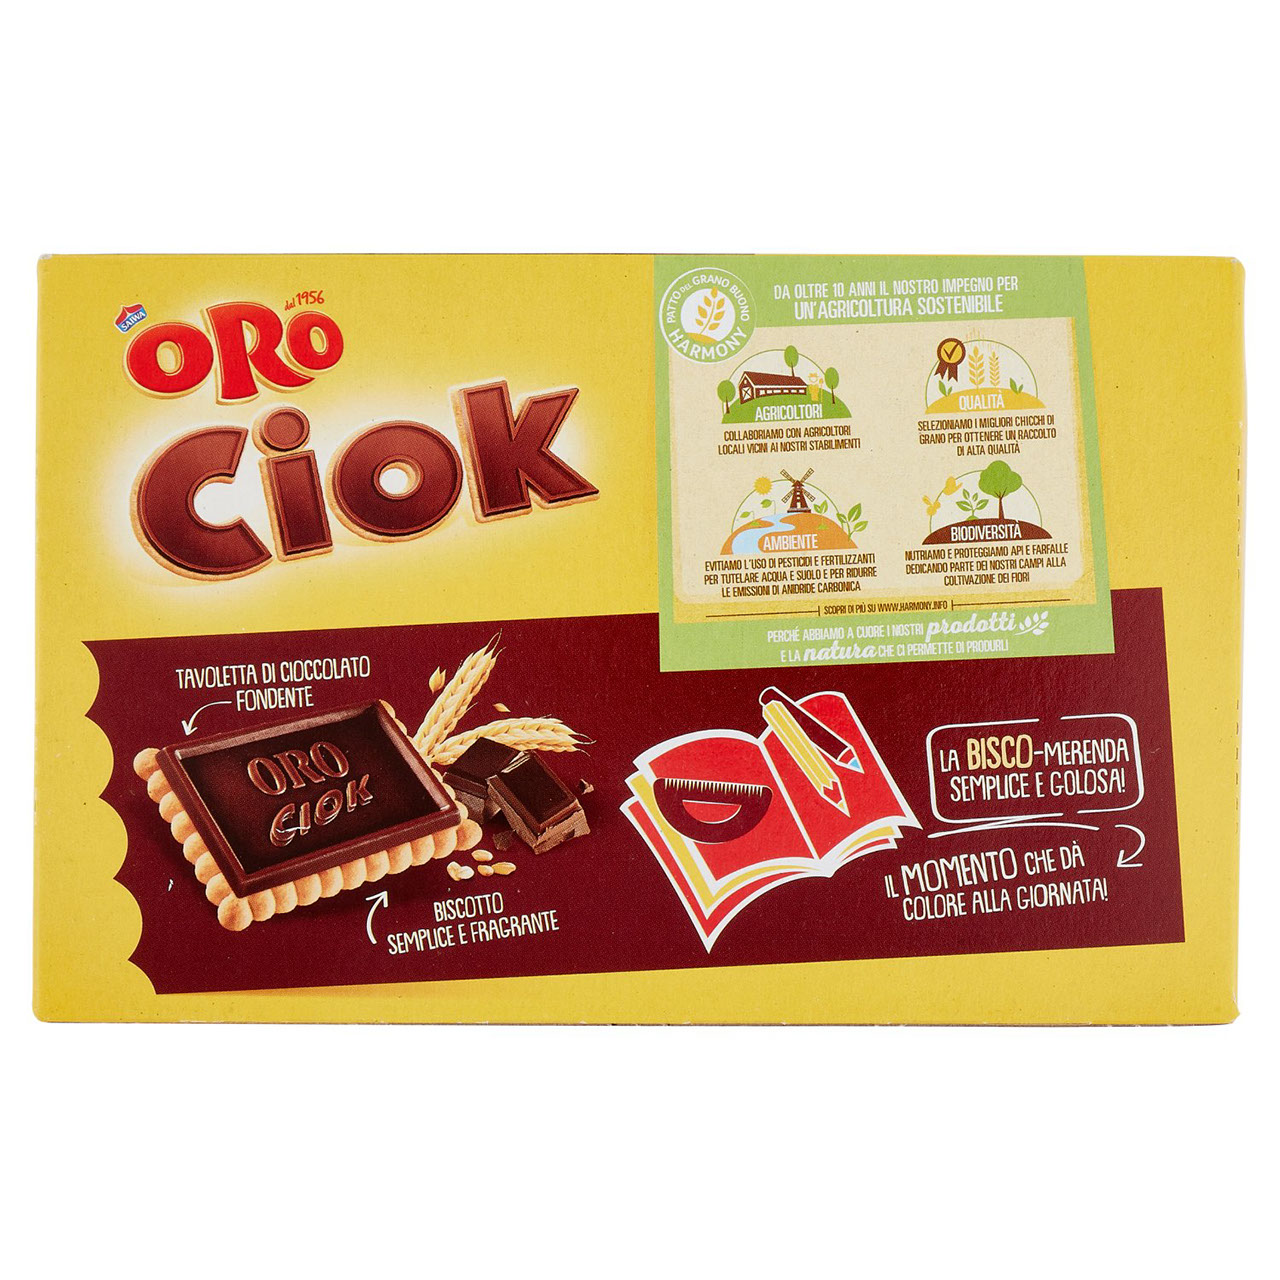 Oro Ciok Cioccolato Fondente in vendita online